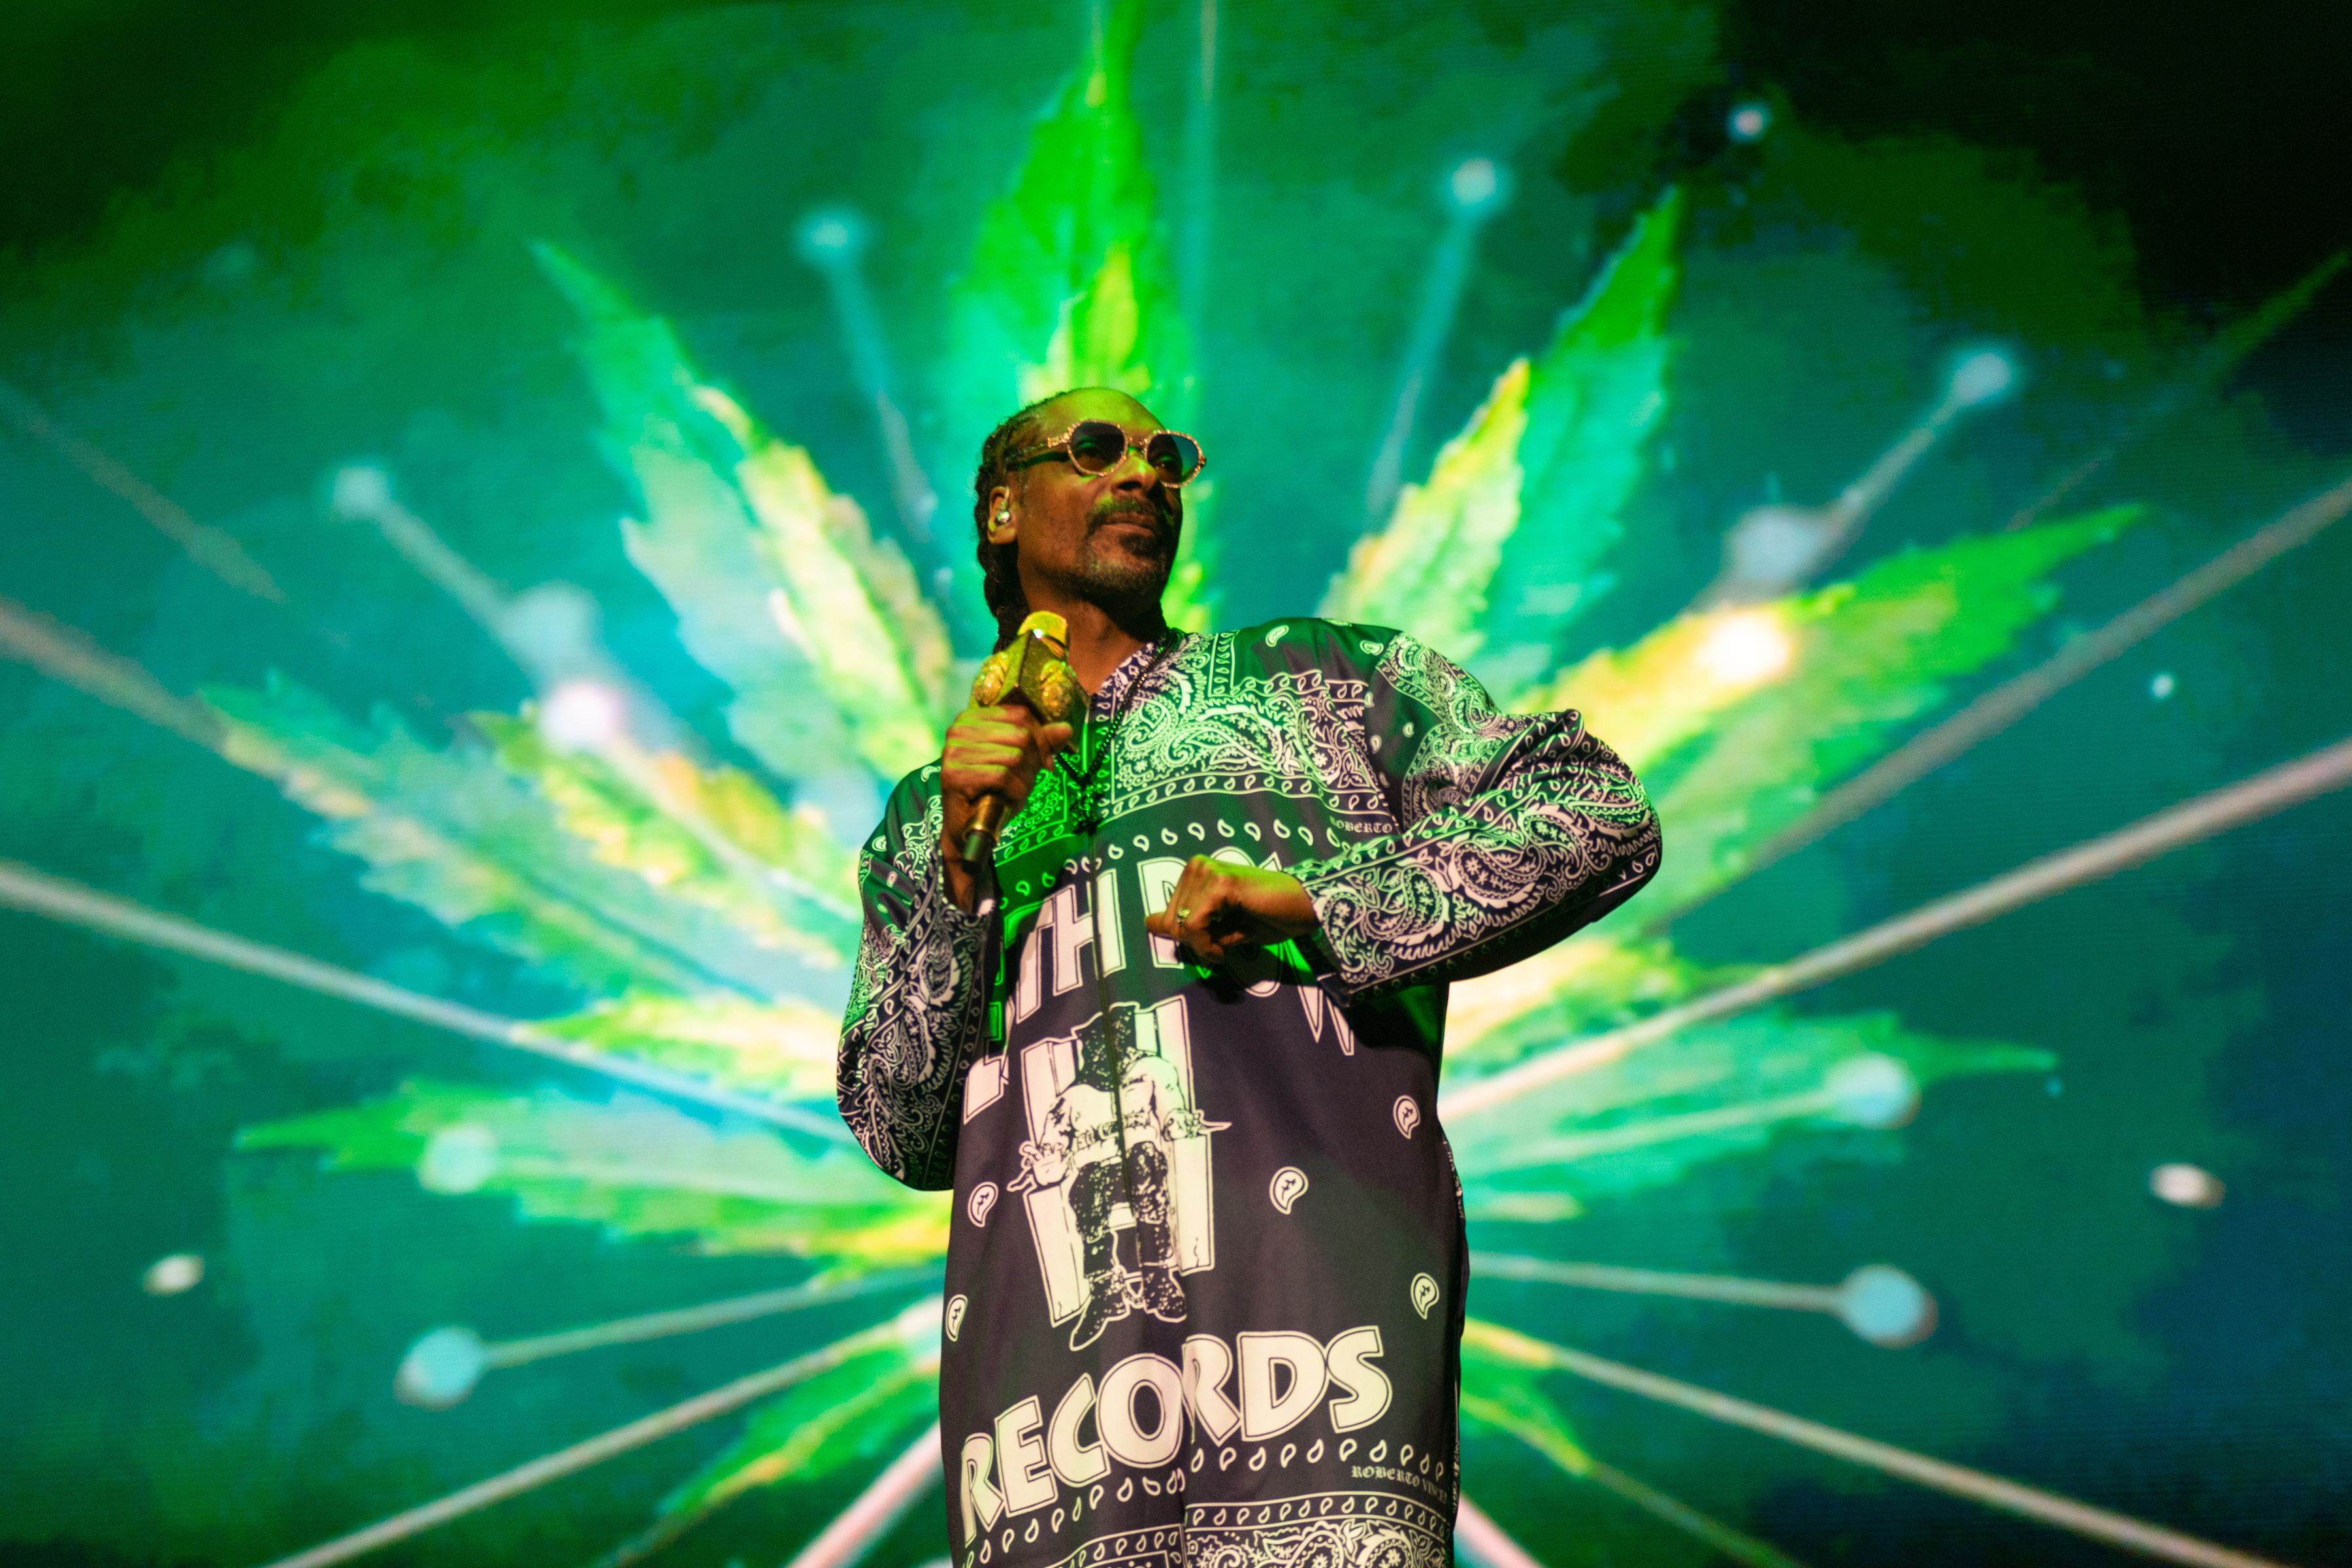 Snoop performing onstage